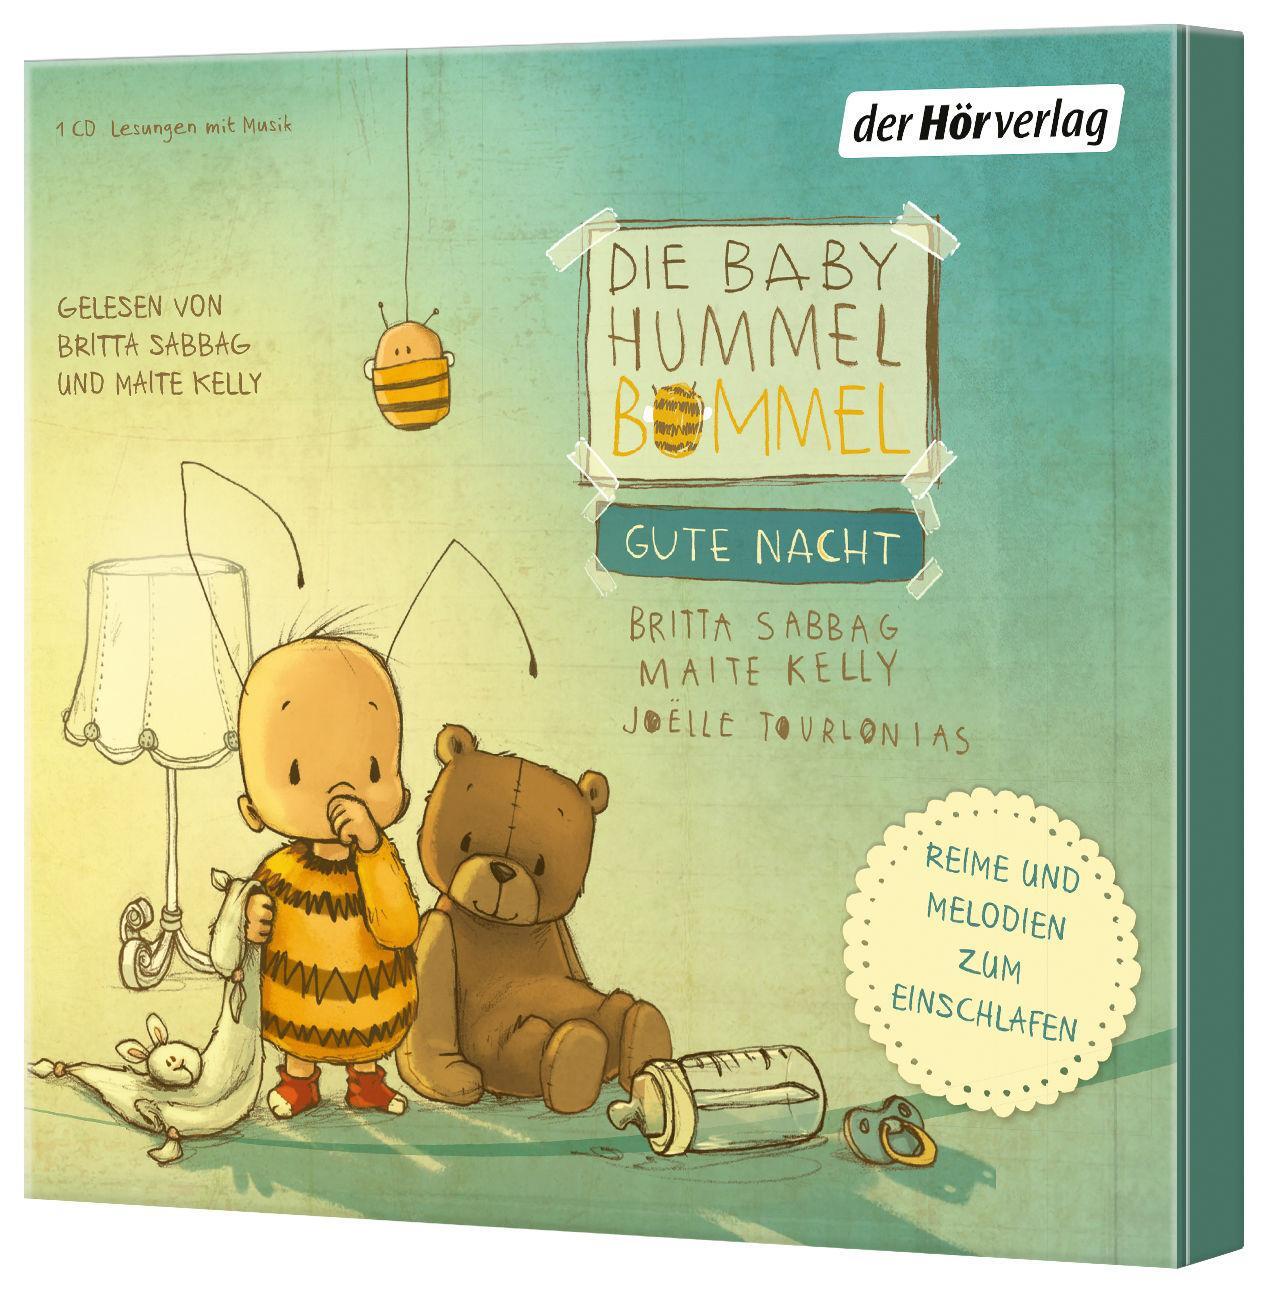 Bild: 9783844525809 | Die Baby Hummel Bommel - Gute Nacht | Audio-CD | 25 Min. | Deutsch